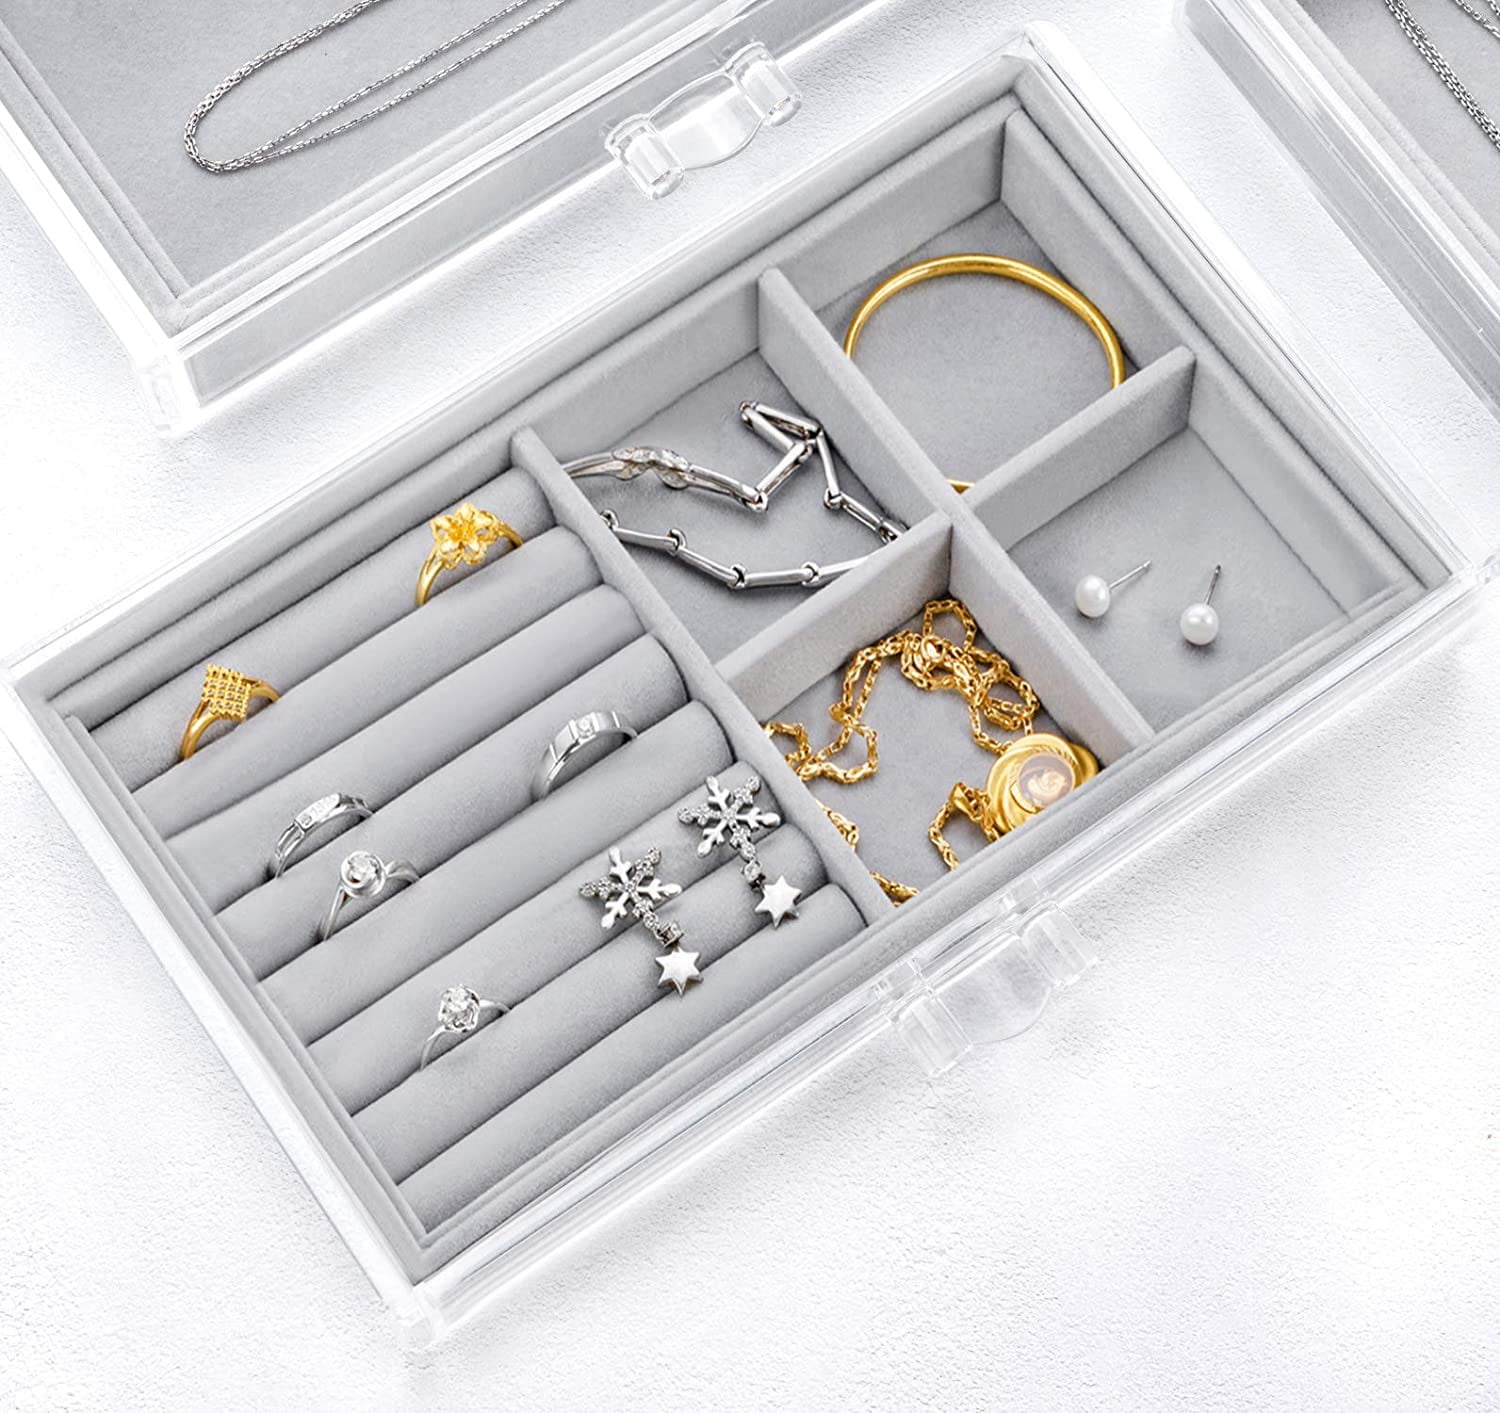 Acrylic Jewelry Organizer Box Women – 3 Drawers Clear Storage Case